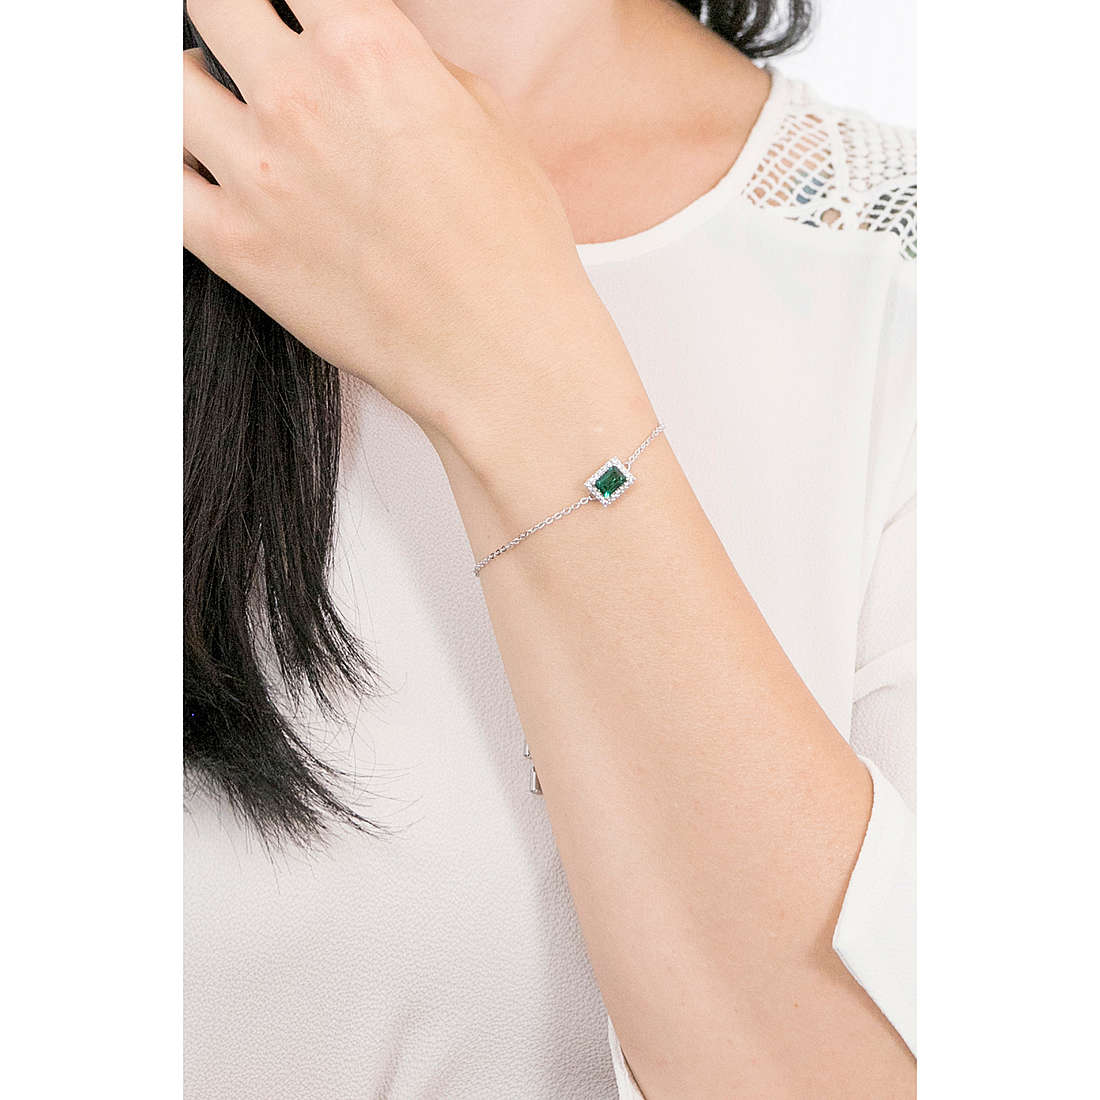 Swarovski bracelets Angelic woman 5559836 wearing